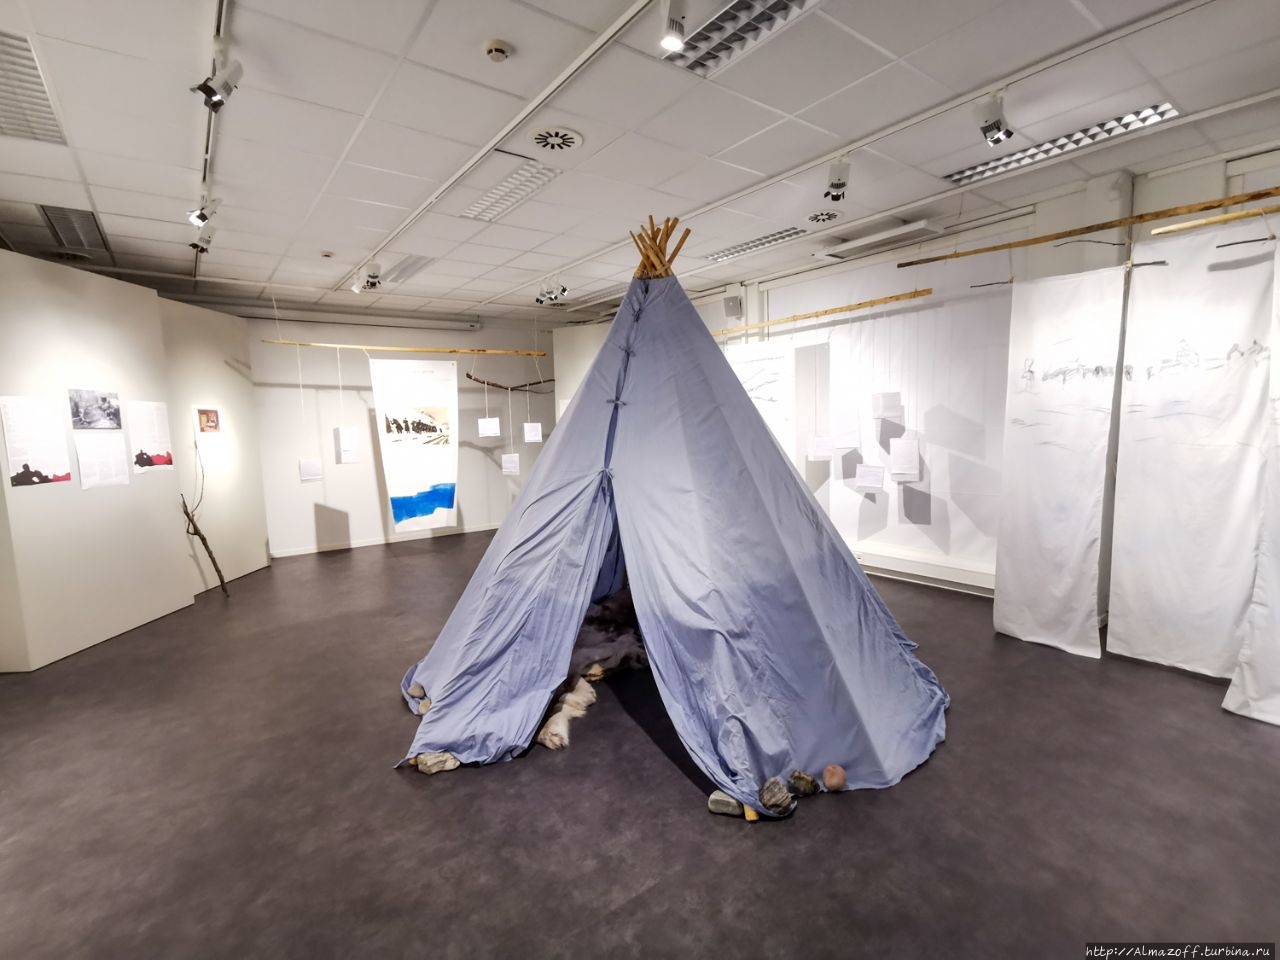 Музей восстановления северных норвежских городов Хаммерфест, Норвегия